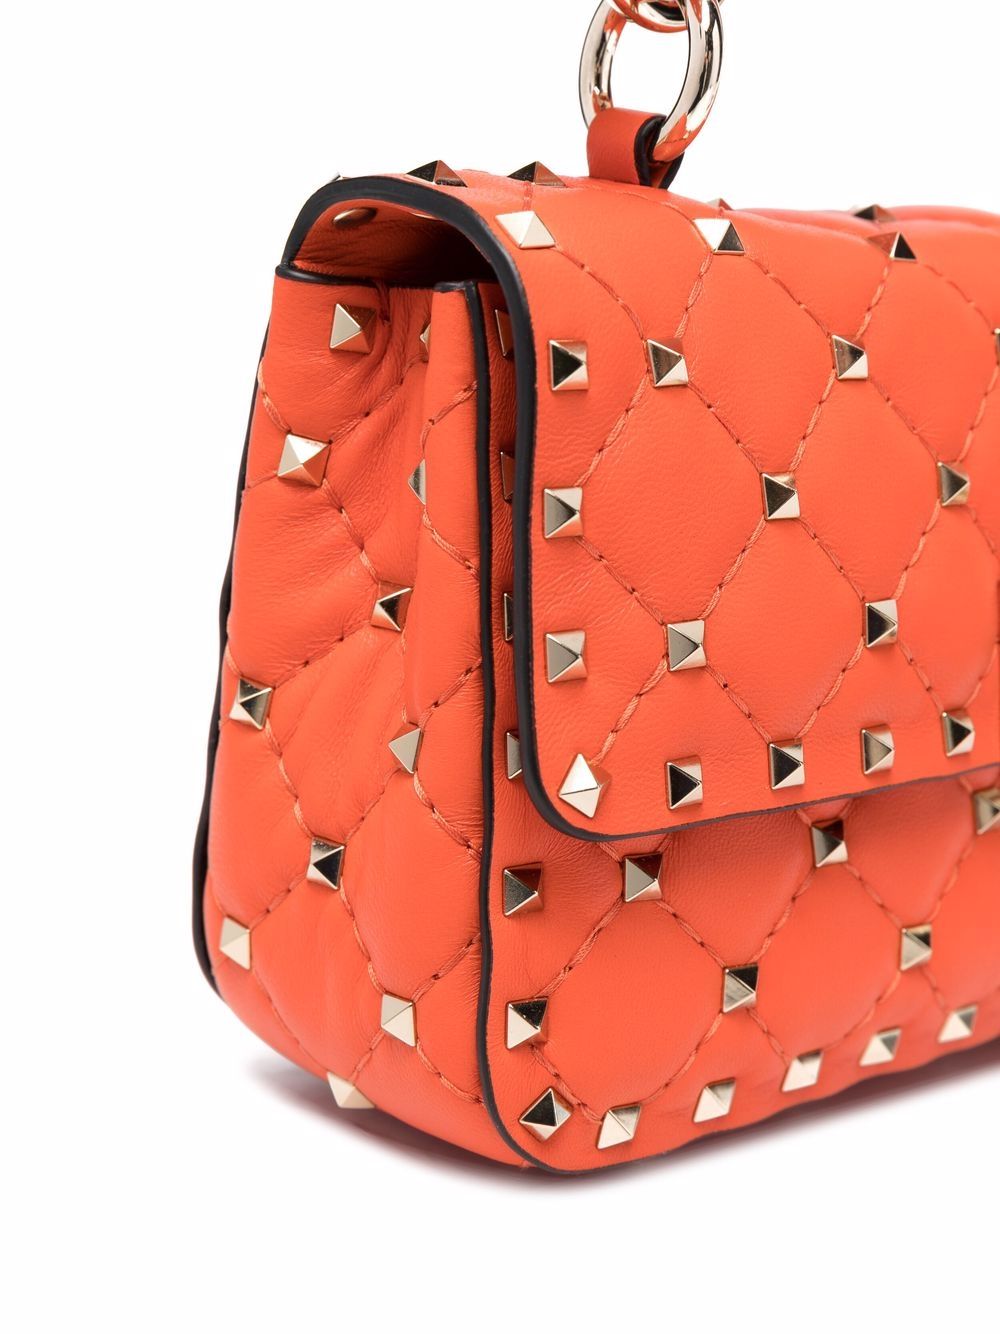 Valentino Garavani small Rockstud Spike shoulder bag - ShopStyle